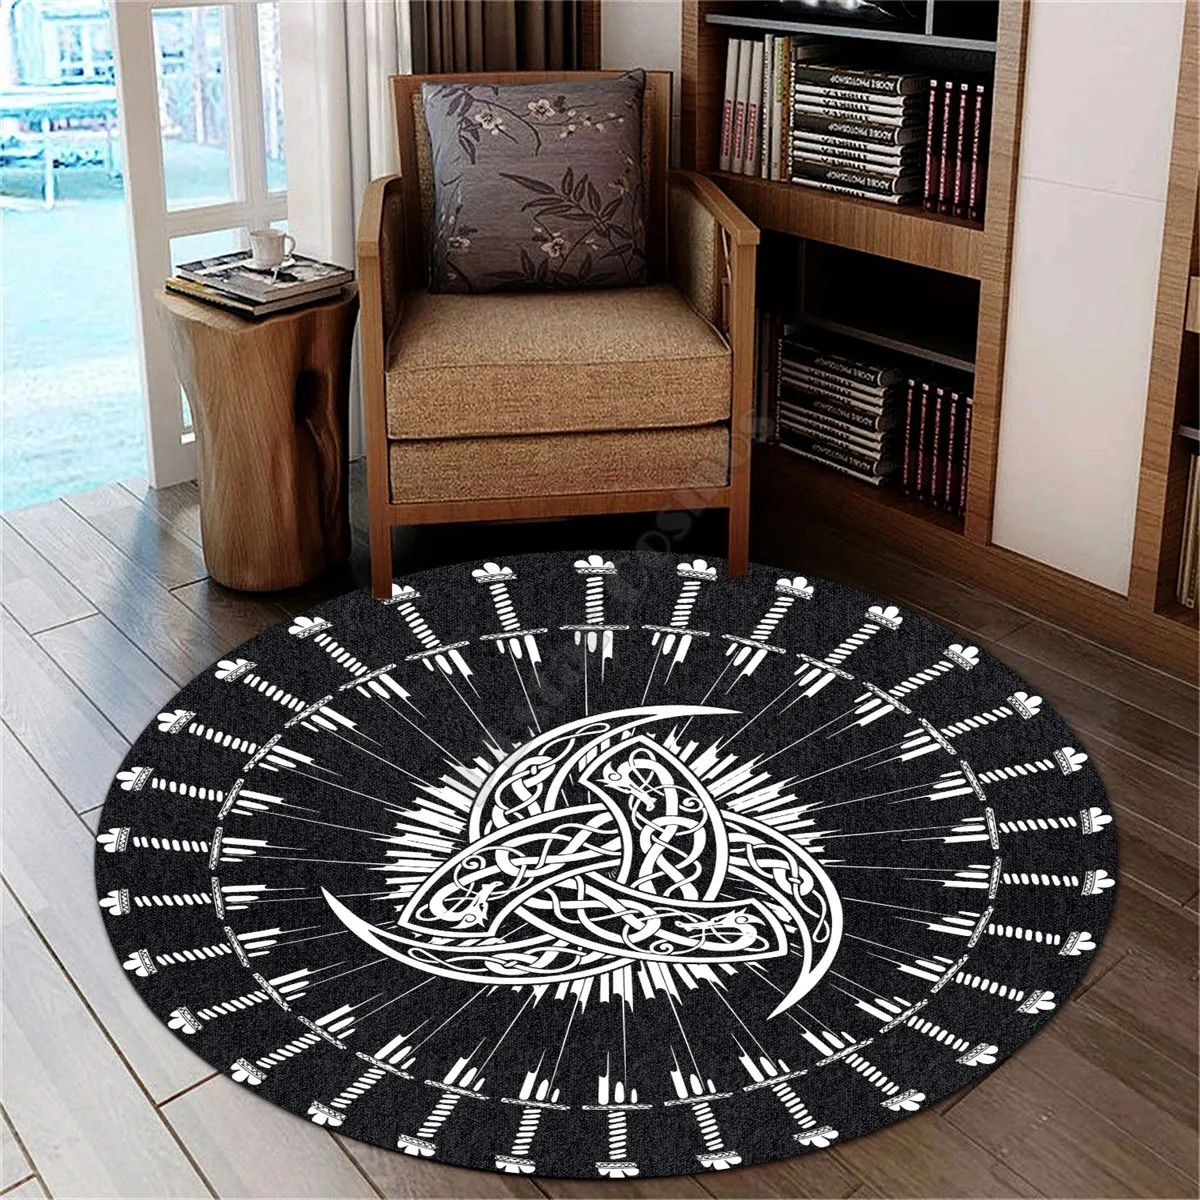 

Viking Style Carpet Horn of Odin 3D All Over Printed Rug Non-slip Mat Dining Living Room Soft Bedroom Carpet